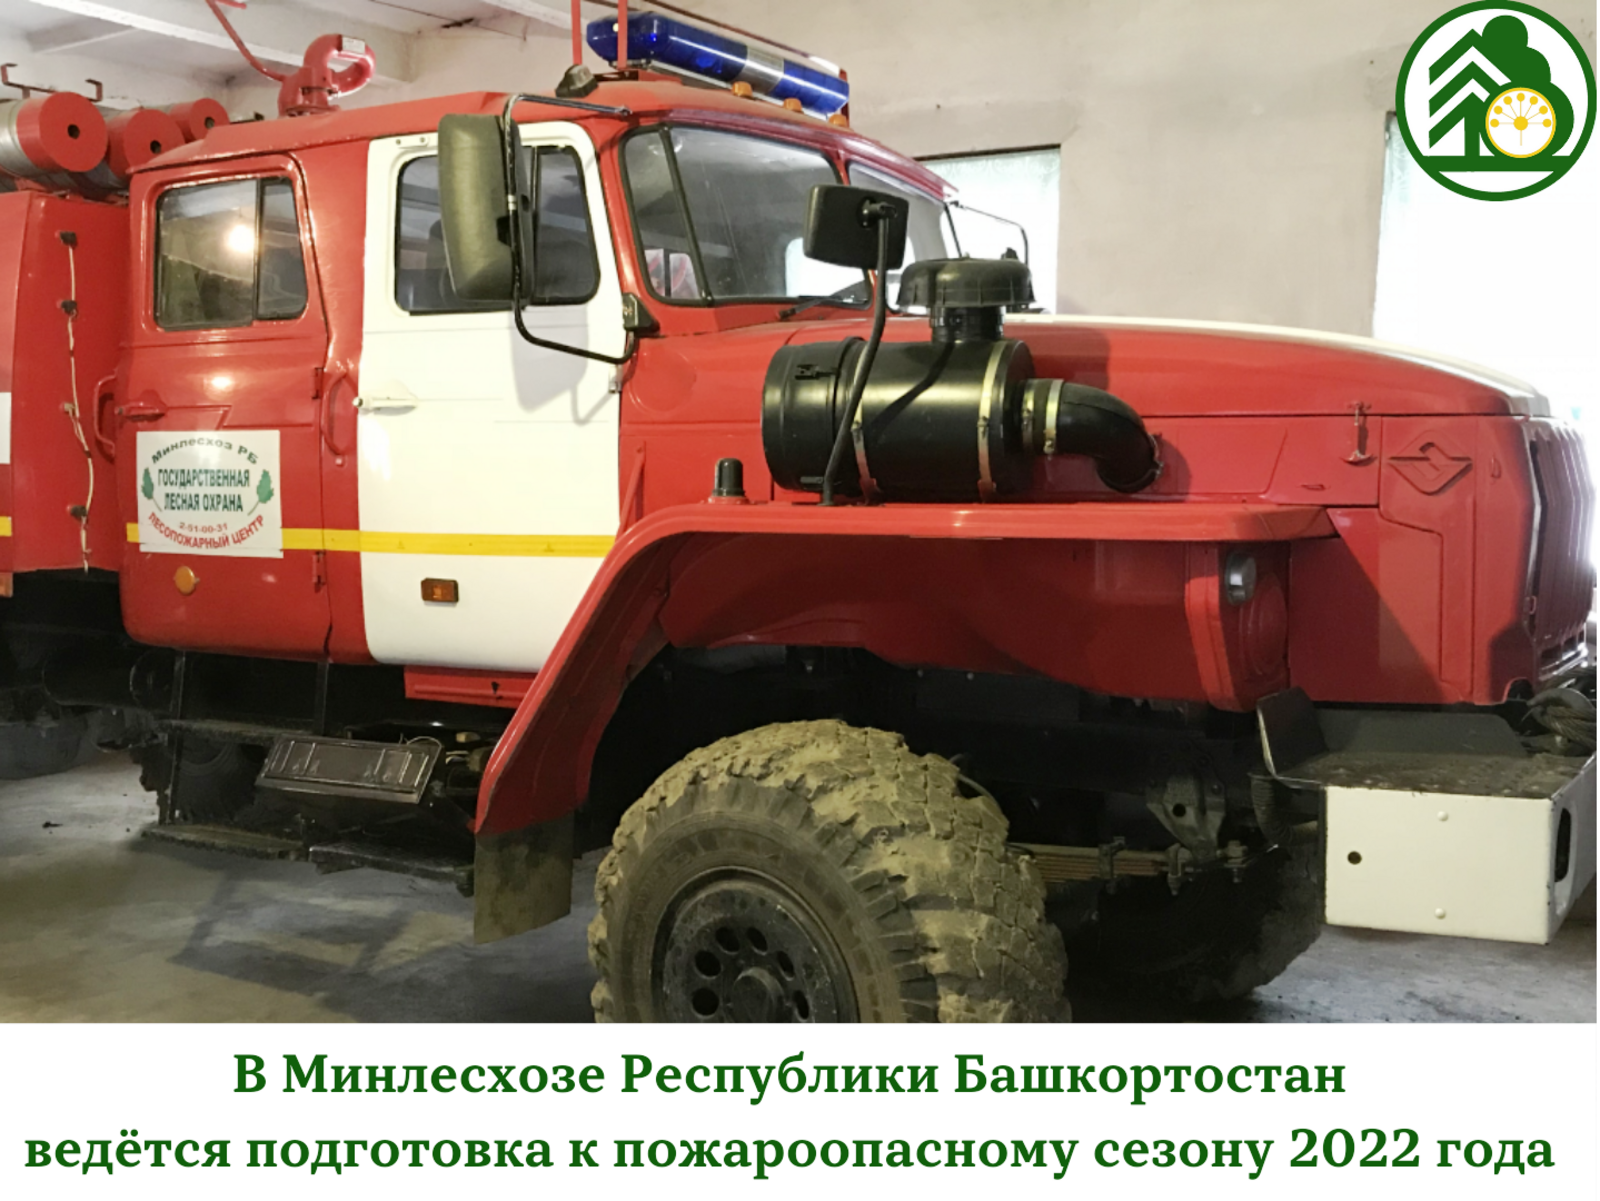 В Минлесхозе Республики Башкортостан ведётся подготовка к пожароопасному сезону 2022 года